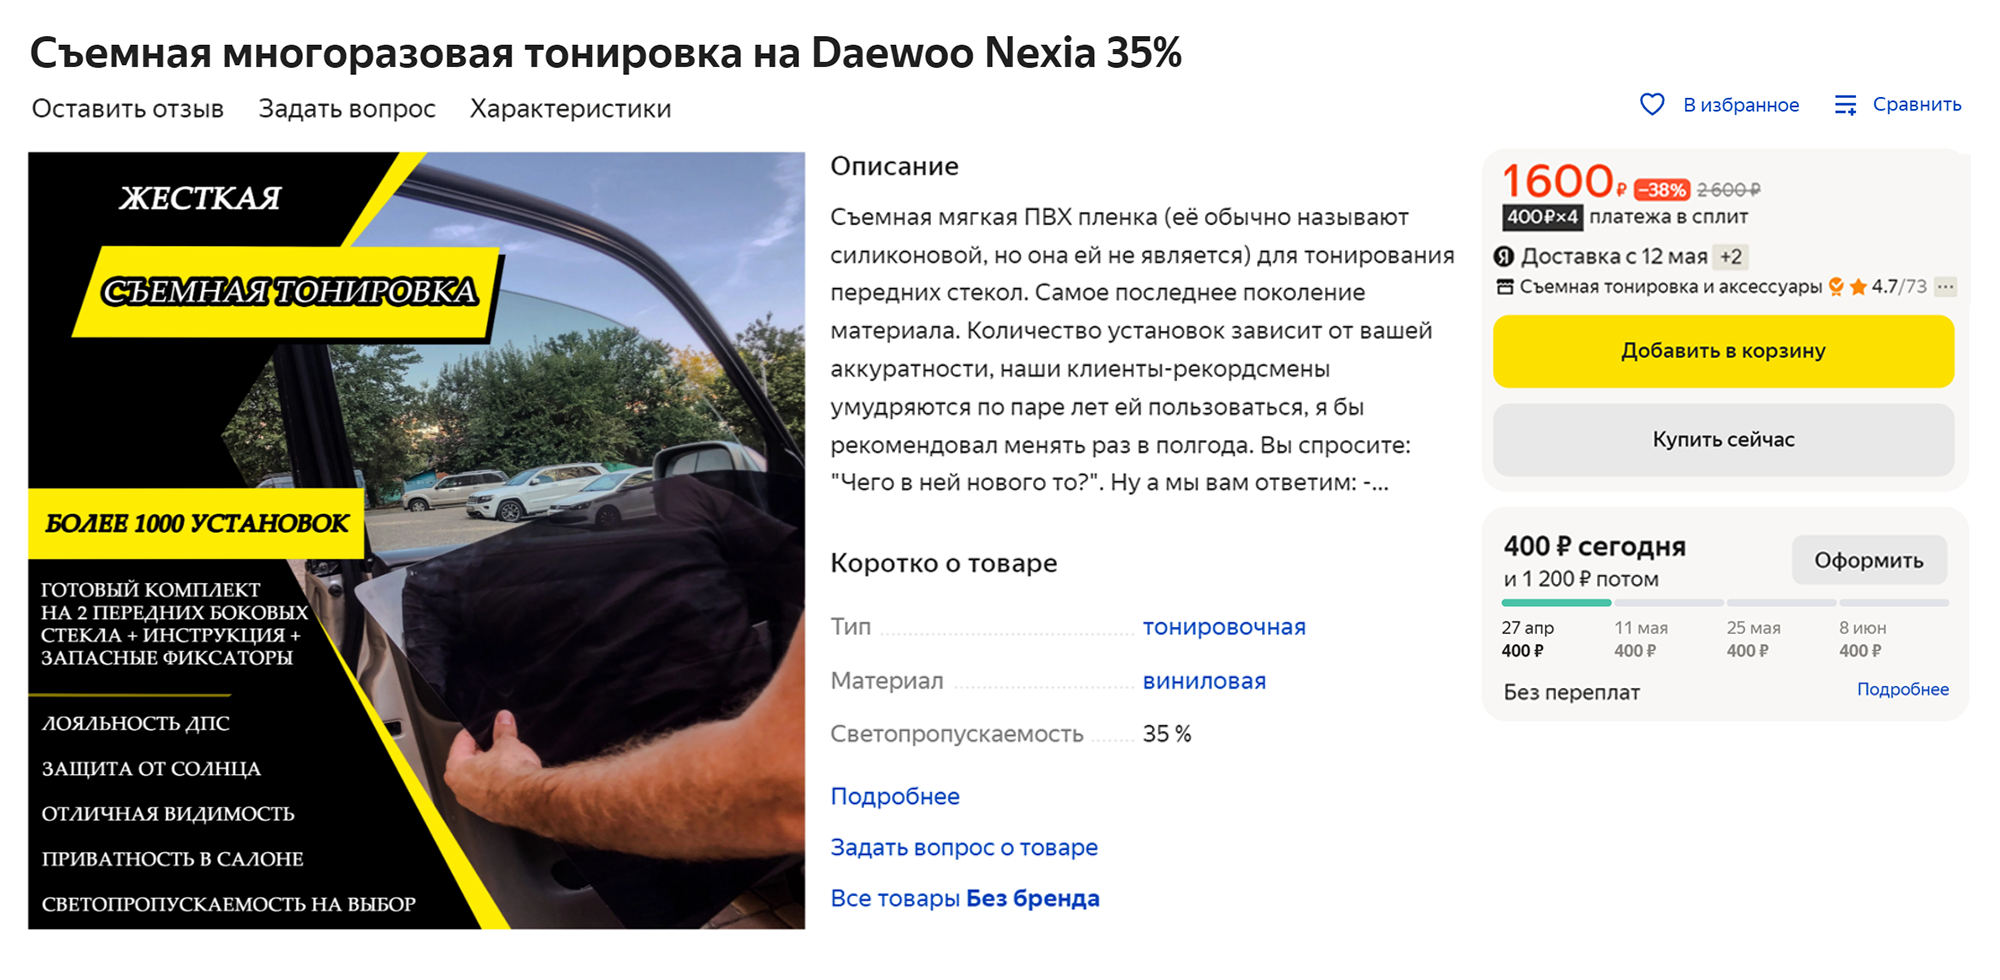 Съемная тонировка, объявление на «Яндекс-маркете»